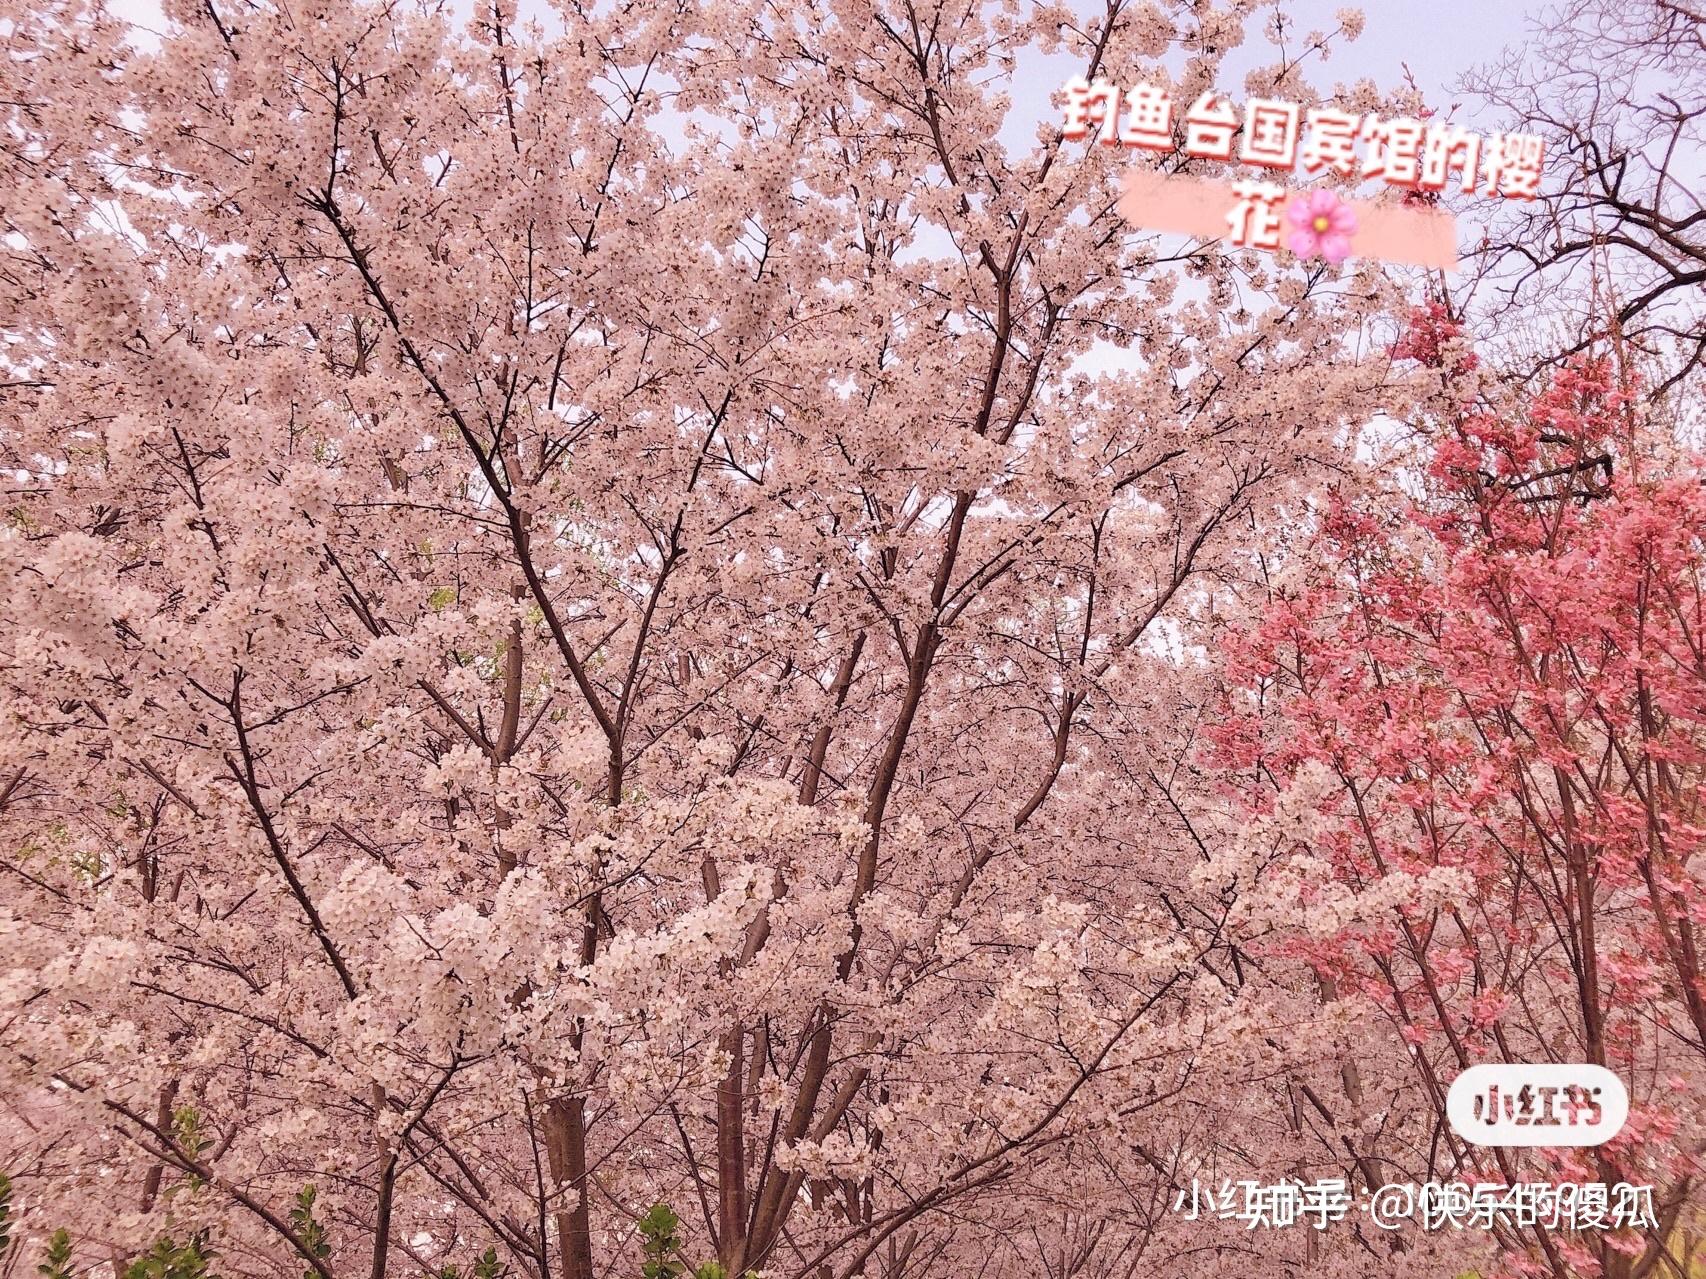 北京玉渊潭公园多种樱花次第开放